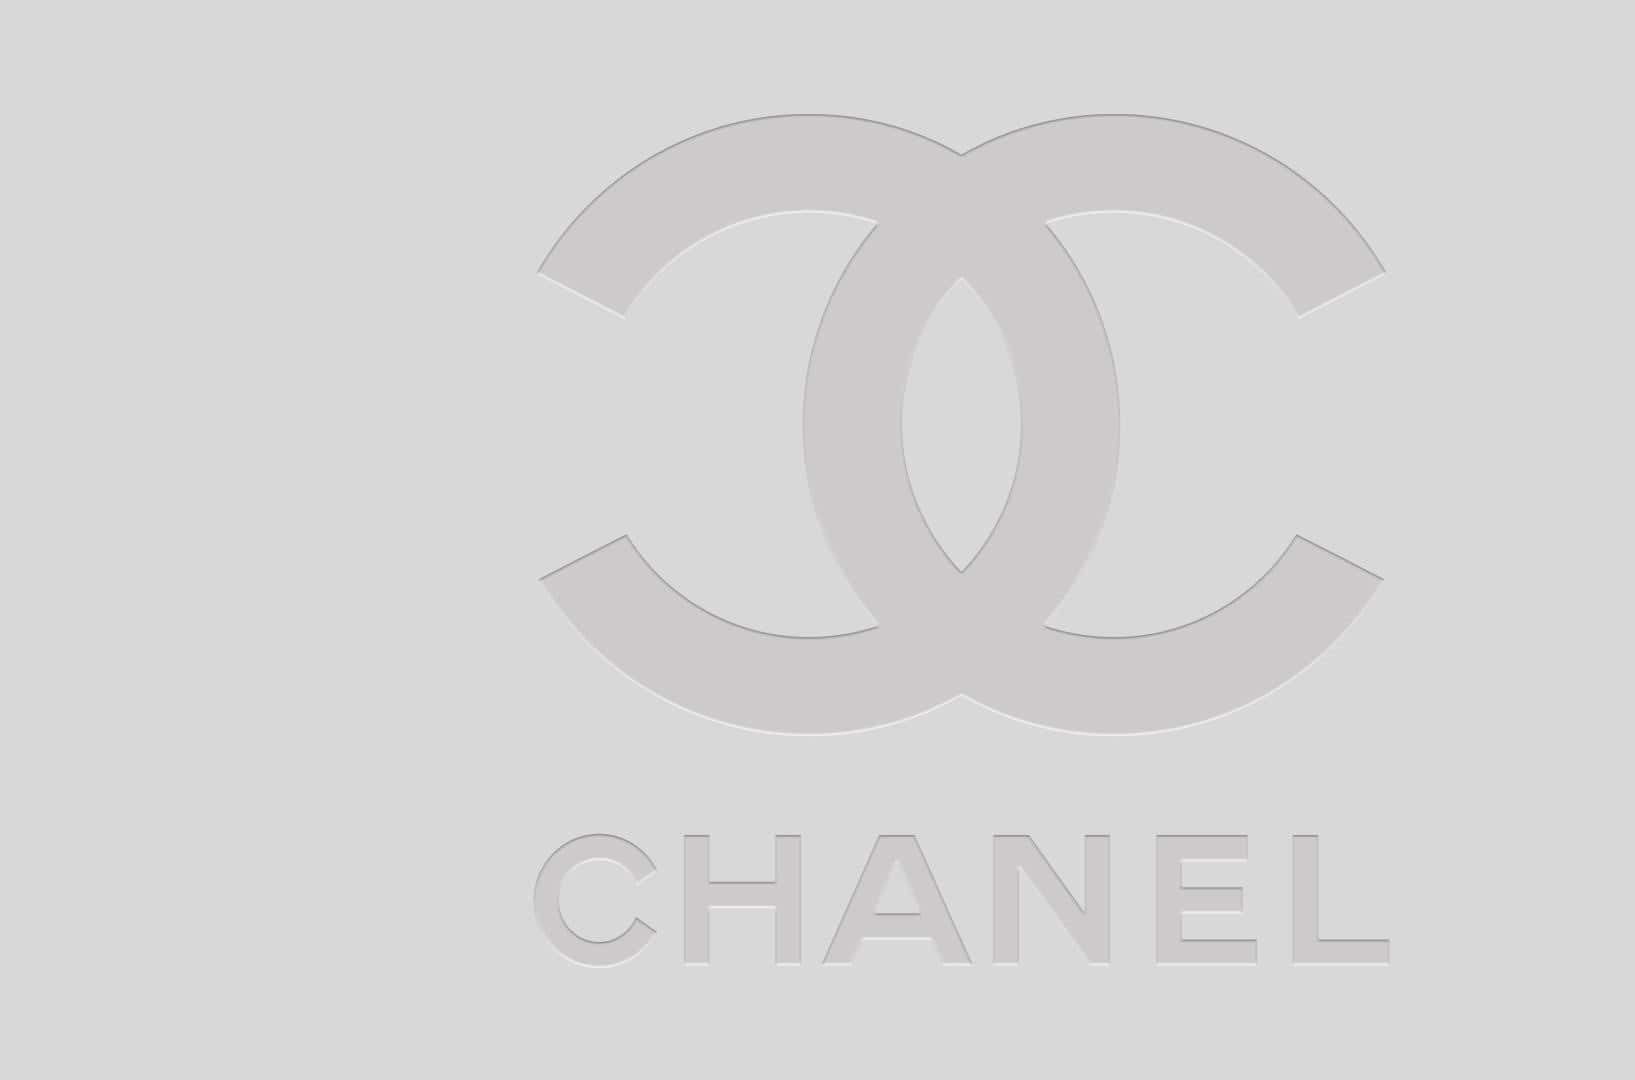 Detikoniske Chanel-logo Med Dets Overlappende Cs.